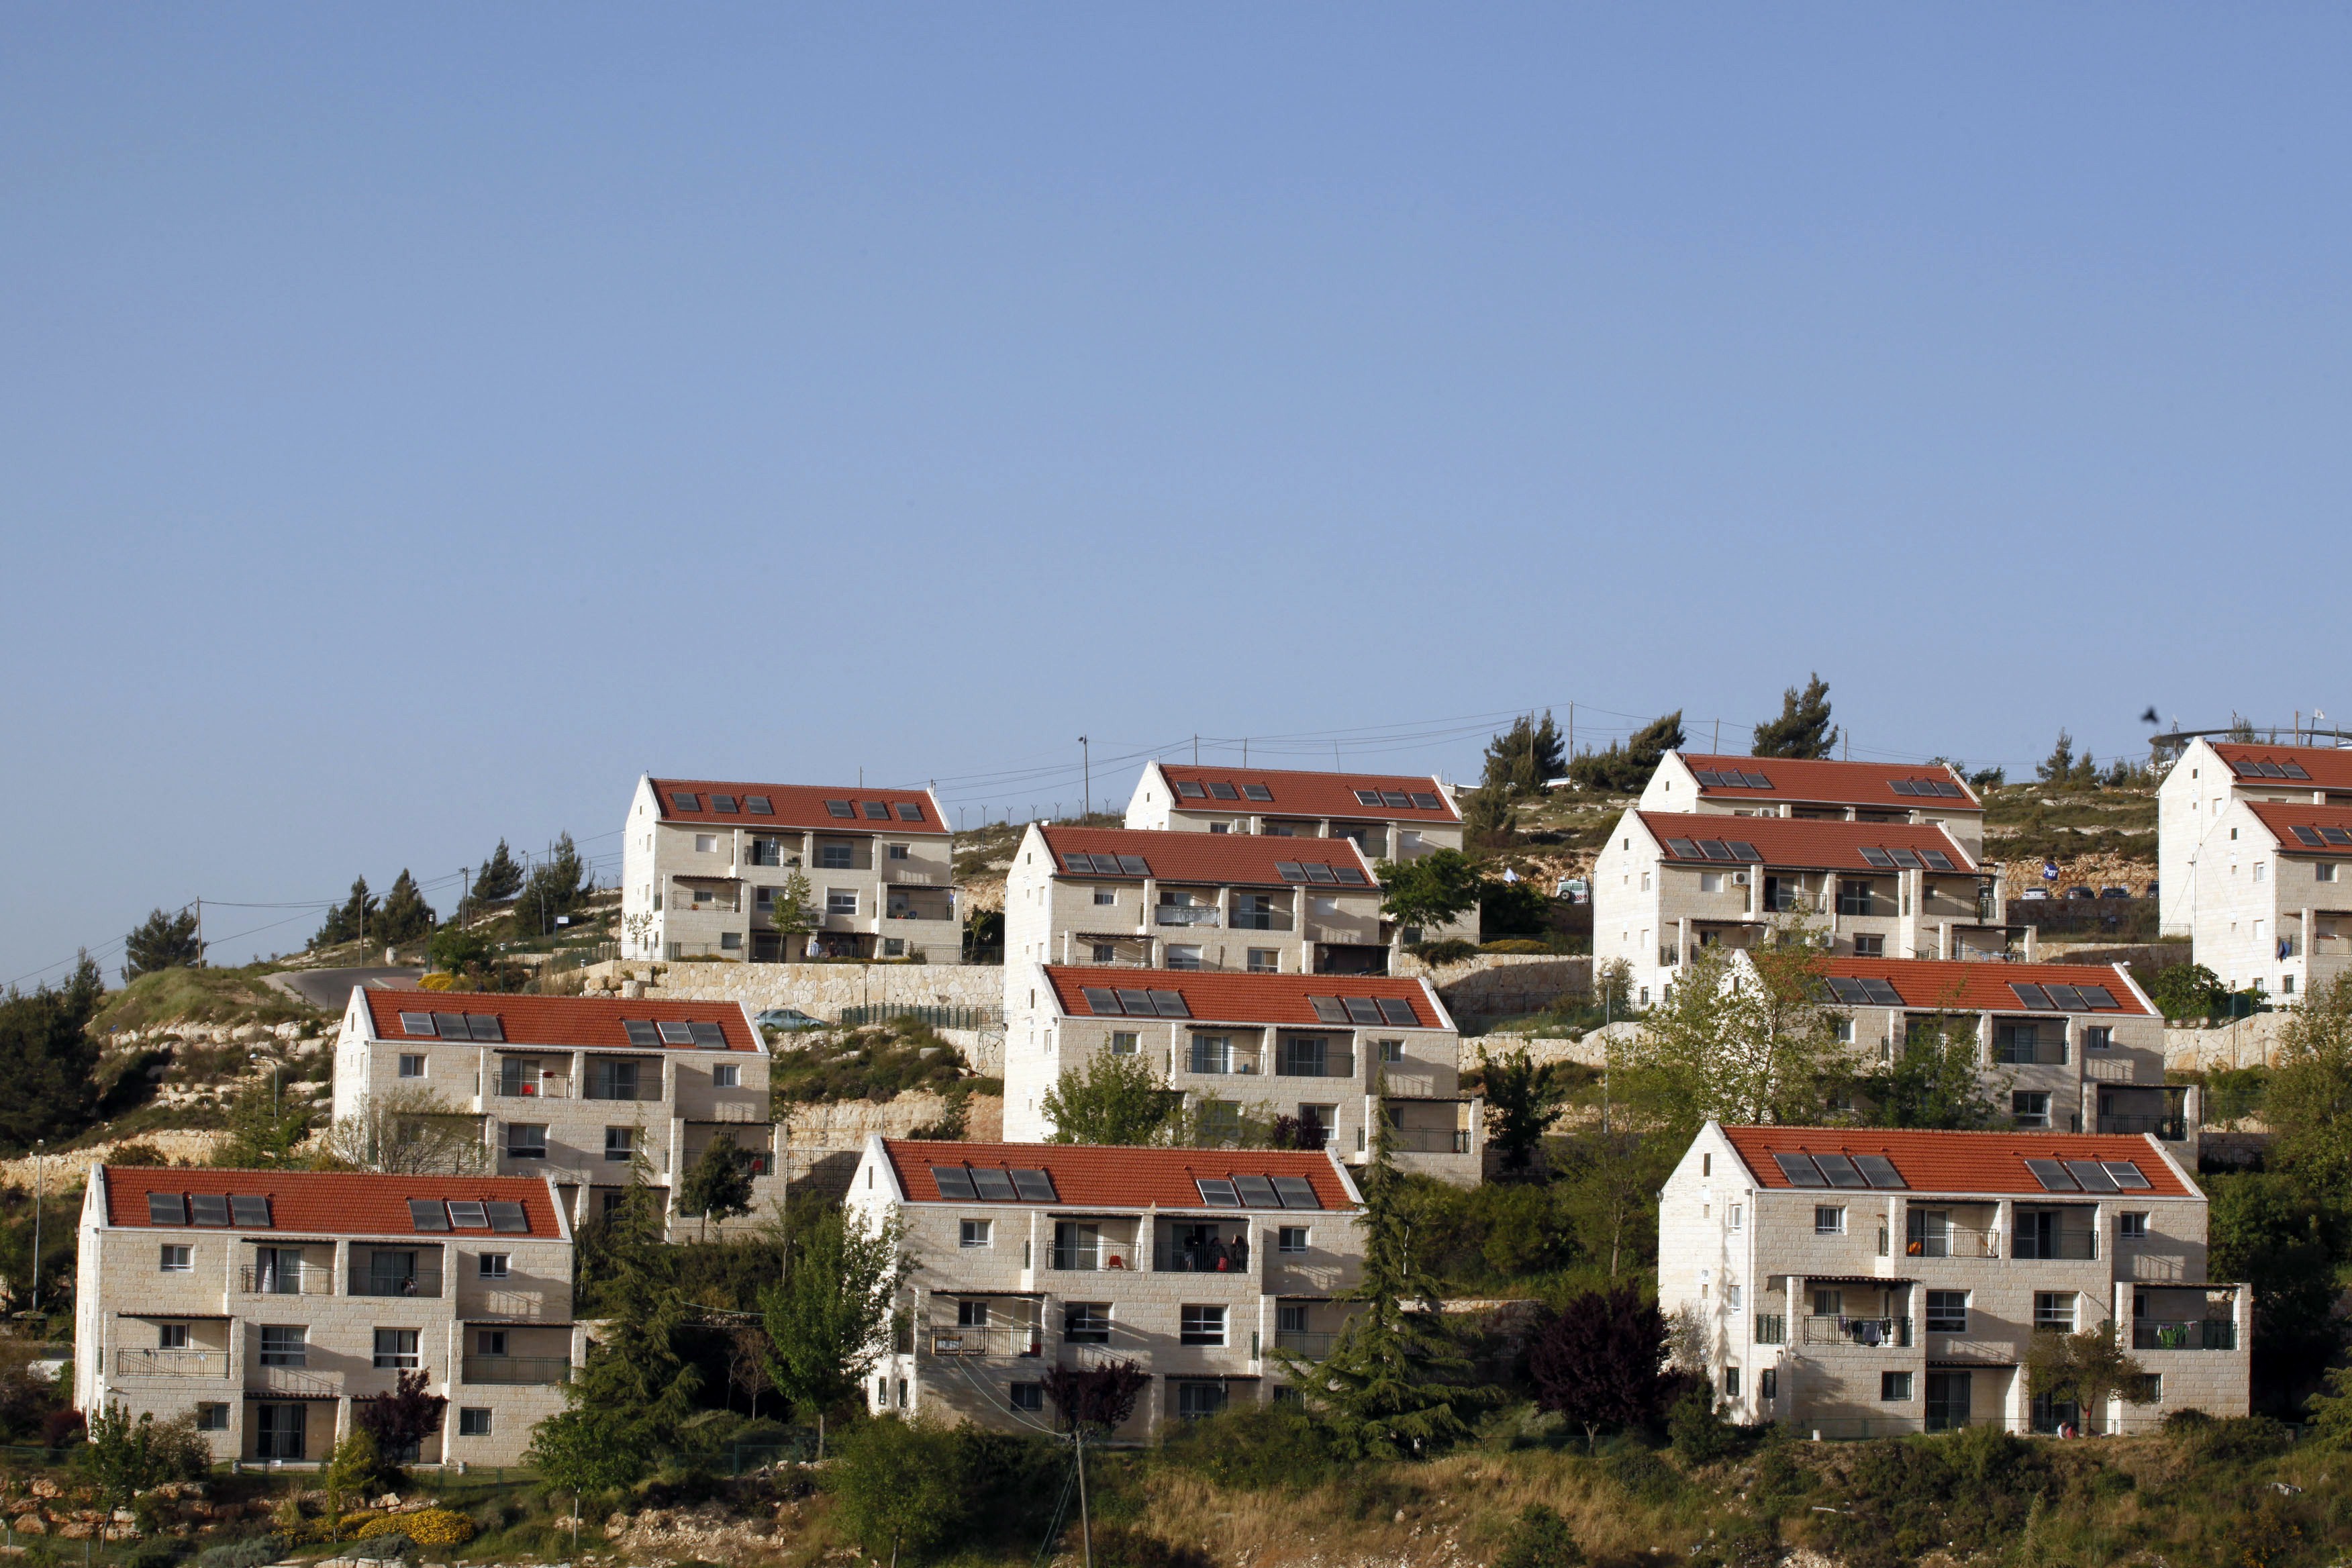  الاحتلال الصهيوني يصادق على إضافة 8 وحدات استيطانية جنوب بيت لحم 